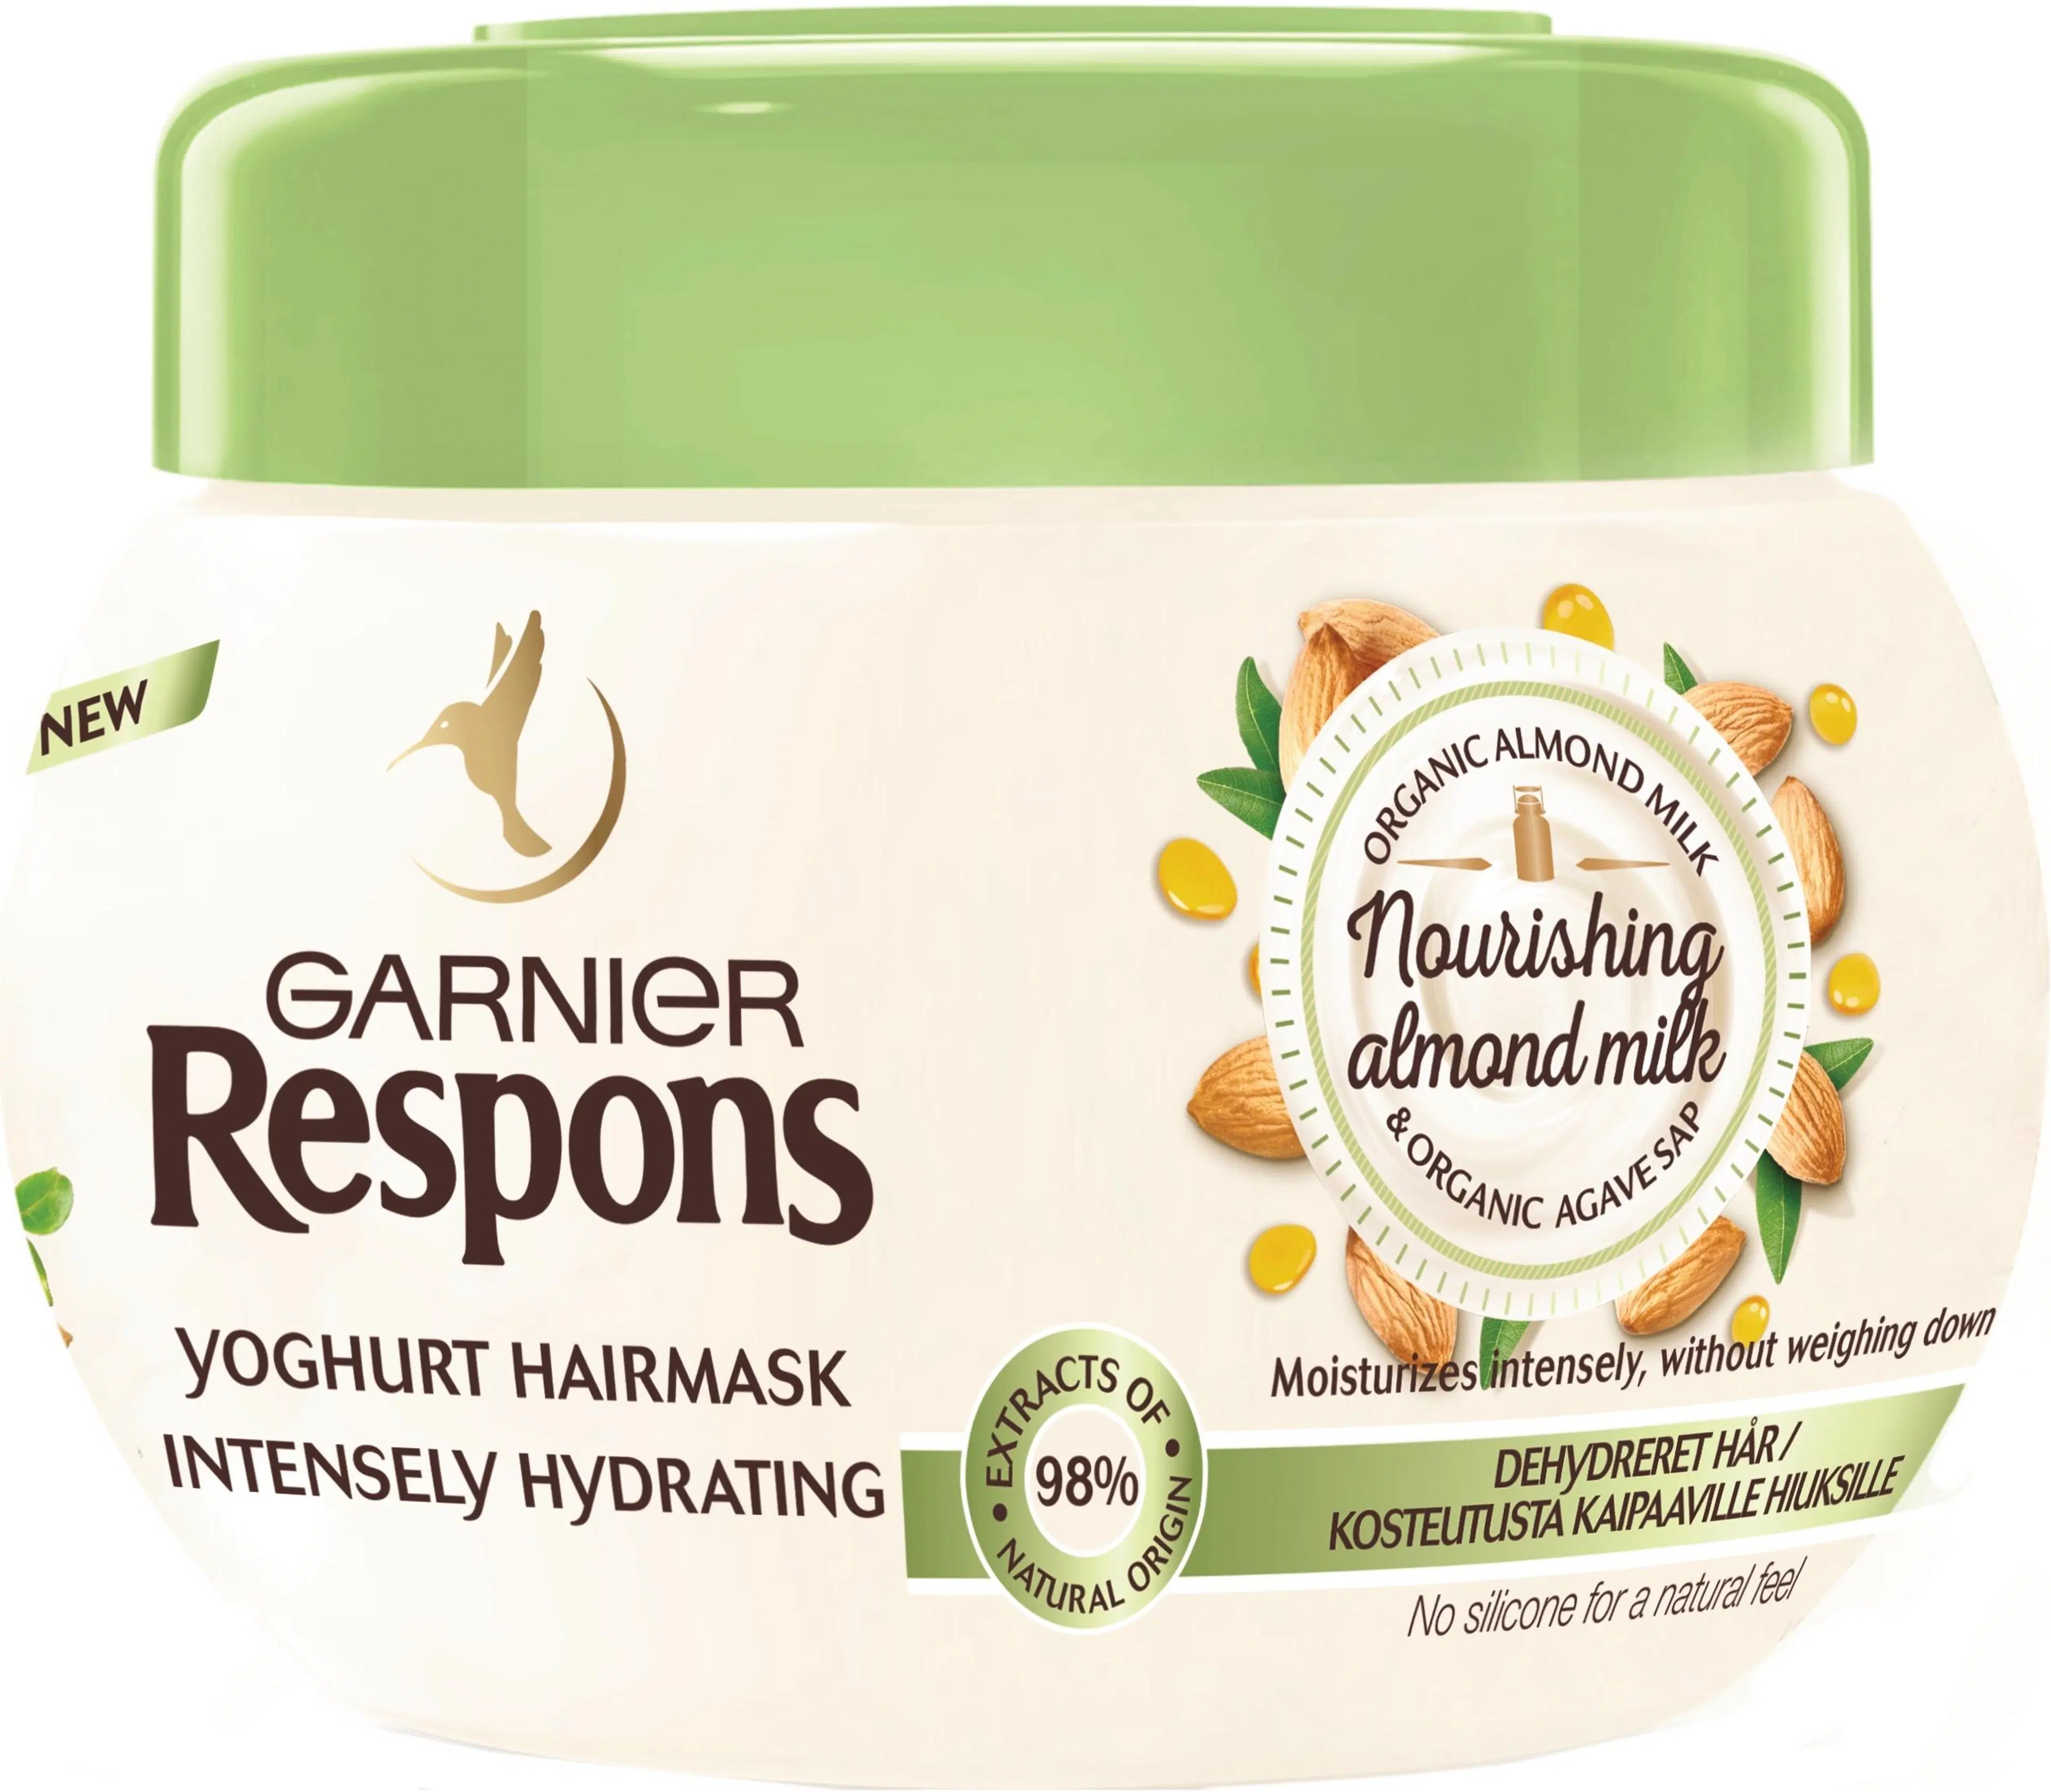 Garnier Respons Nourishing Almond Milk Yoghurt hiusnaamio kosteutusta kaipaaville hiuksille 300ml